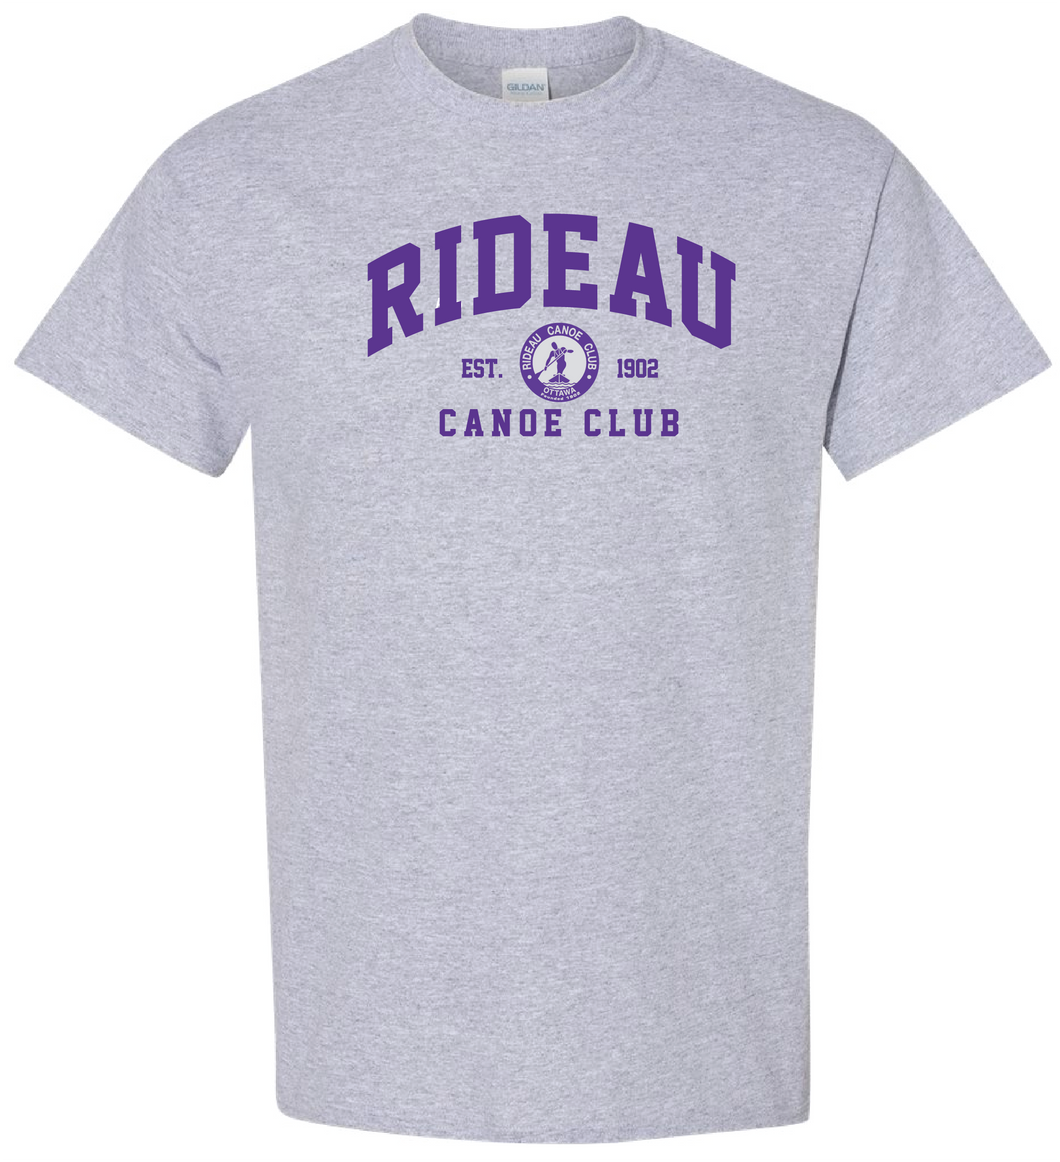 Rideau Canoe Club - Cotton T-Shirt